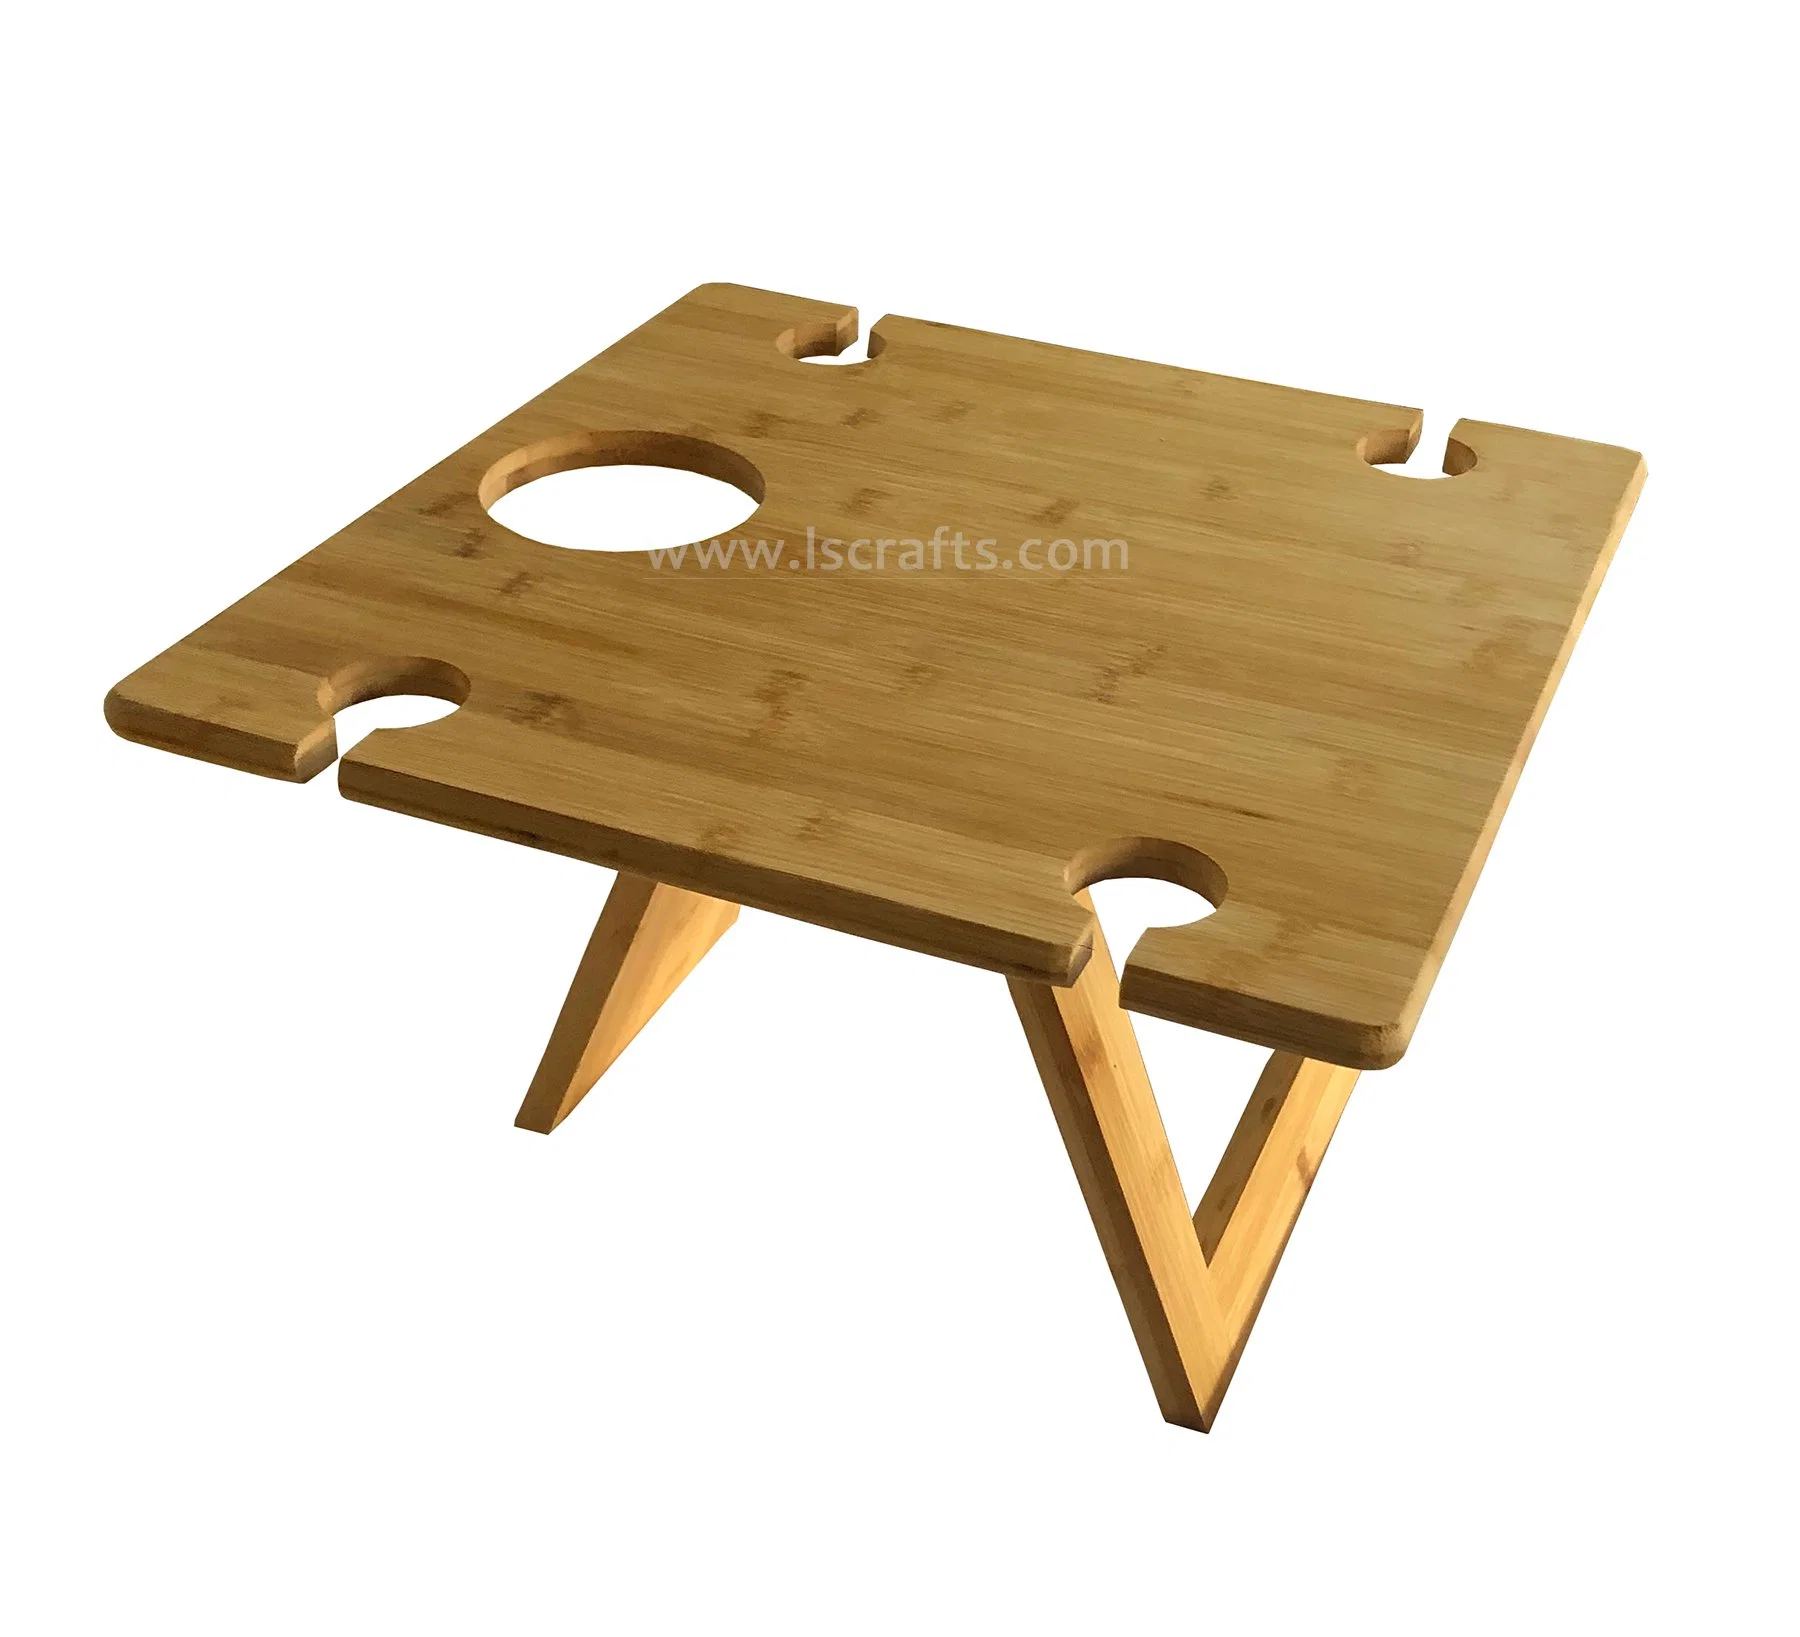 Le bambou/Acacia bois Table de pique-nique pliable portable Outdoor petite table